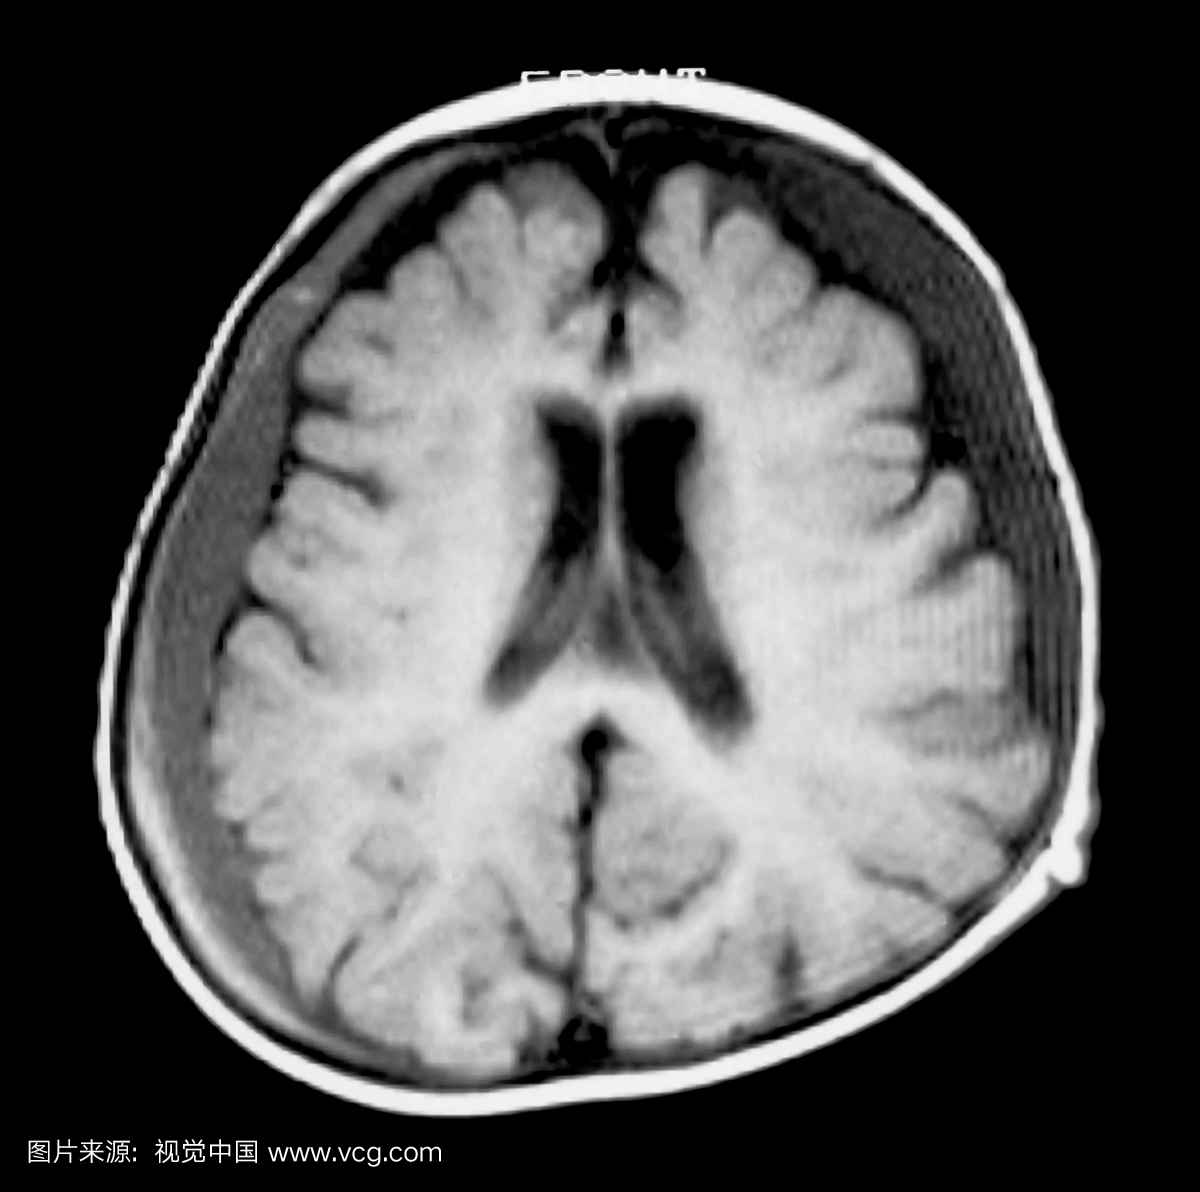 儿童脑部的轴向(横截面)MRI视图显示双侧硬膜